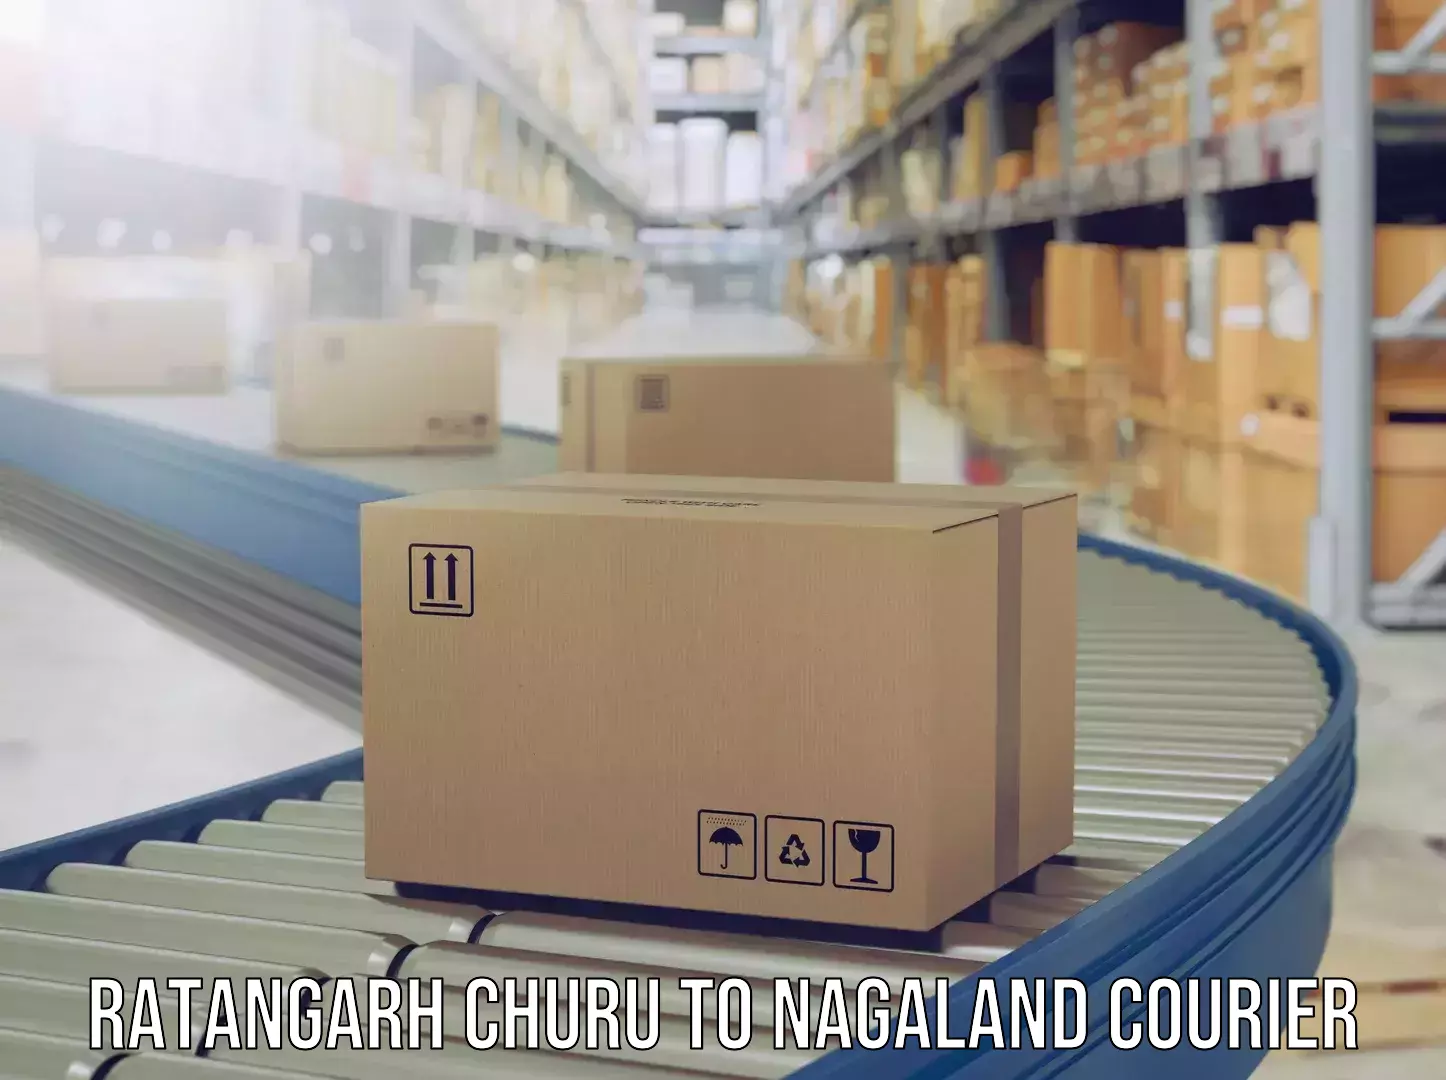 Luggage delivery providers Ratangarh Churu to Kohima